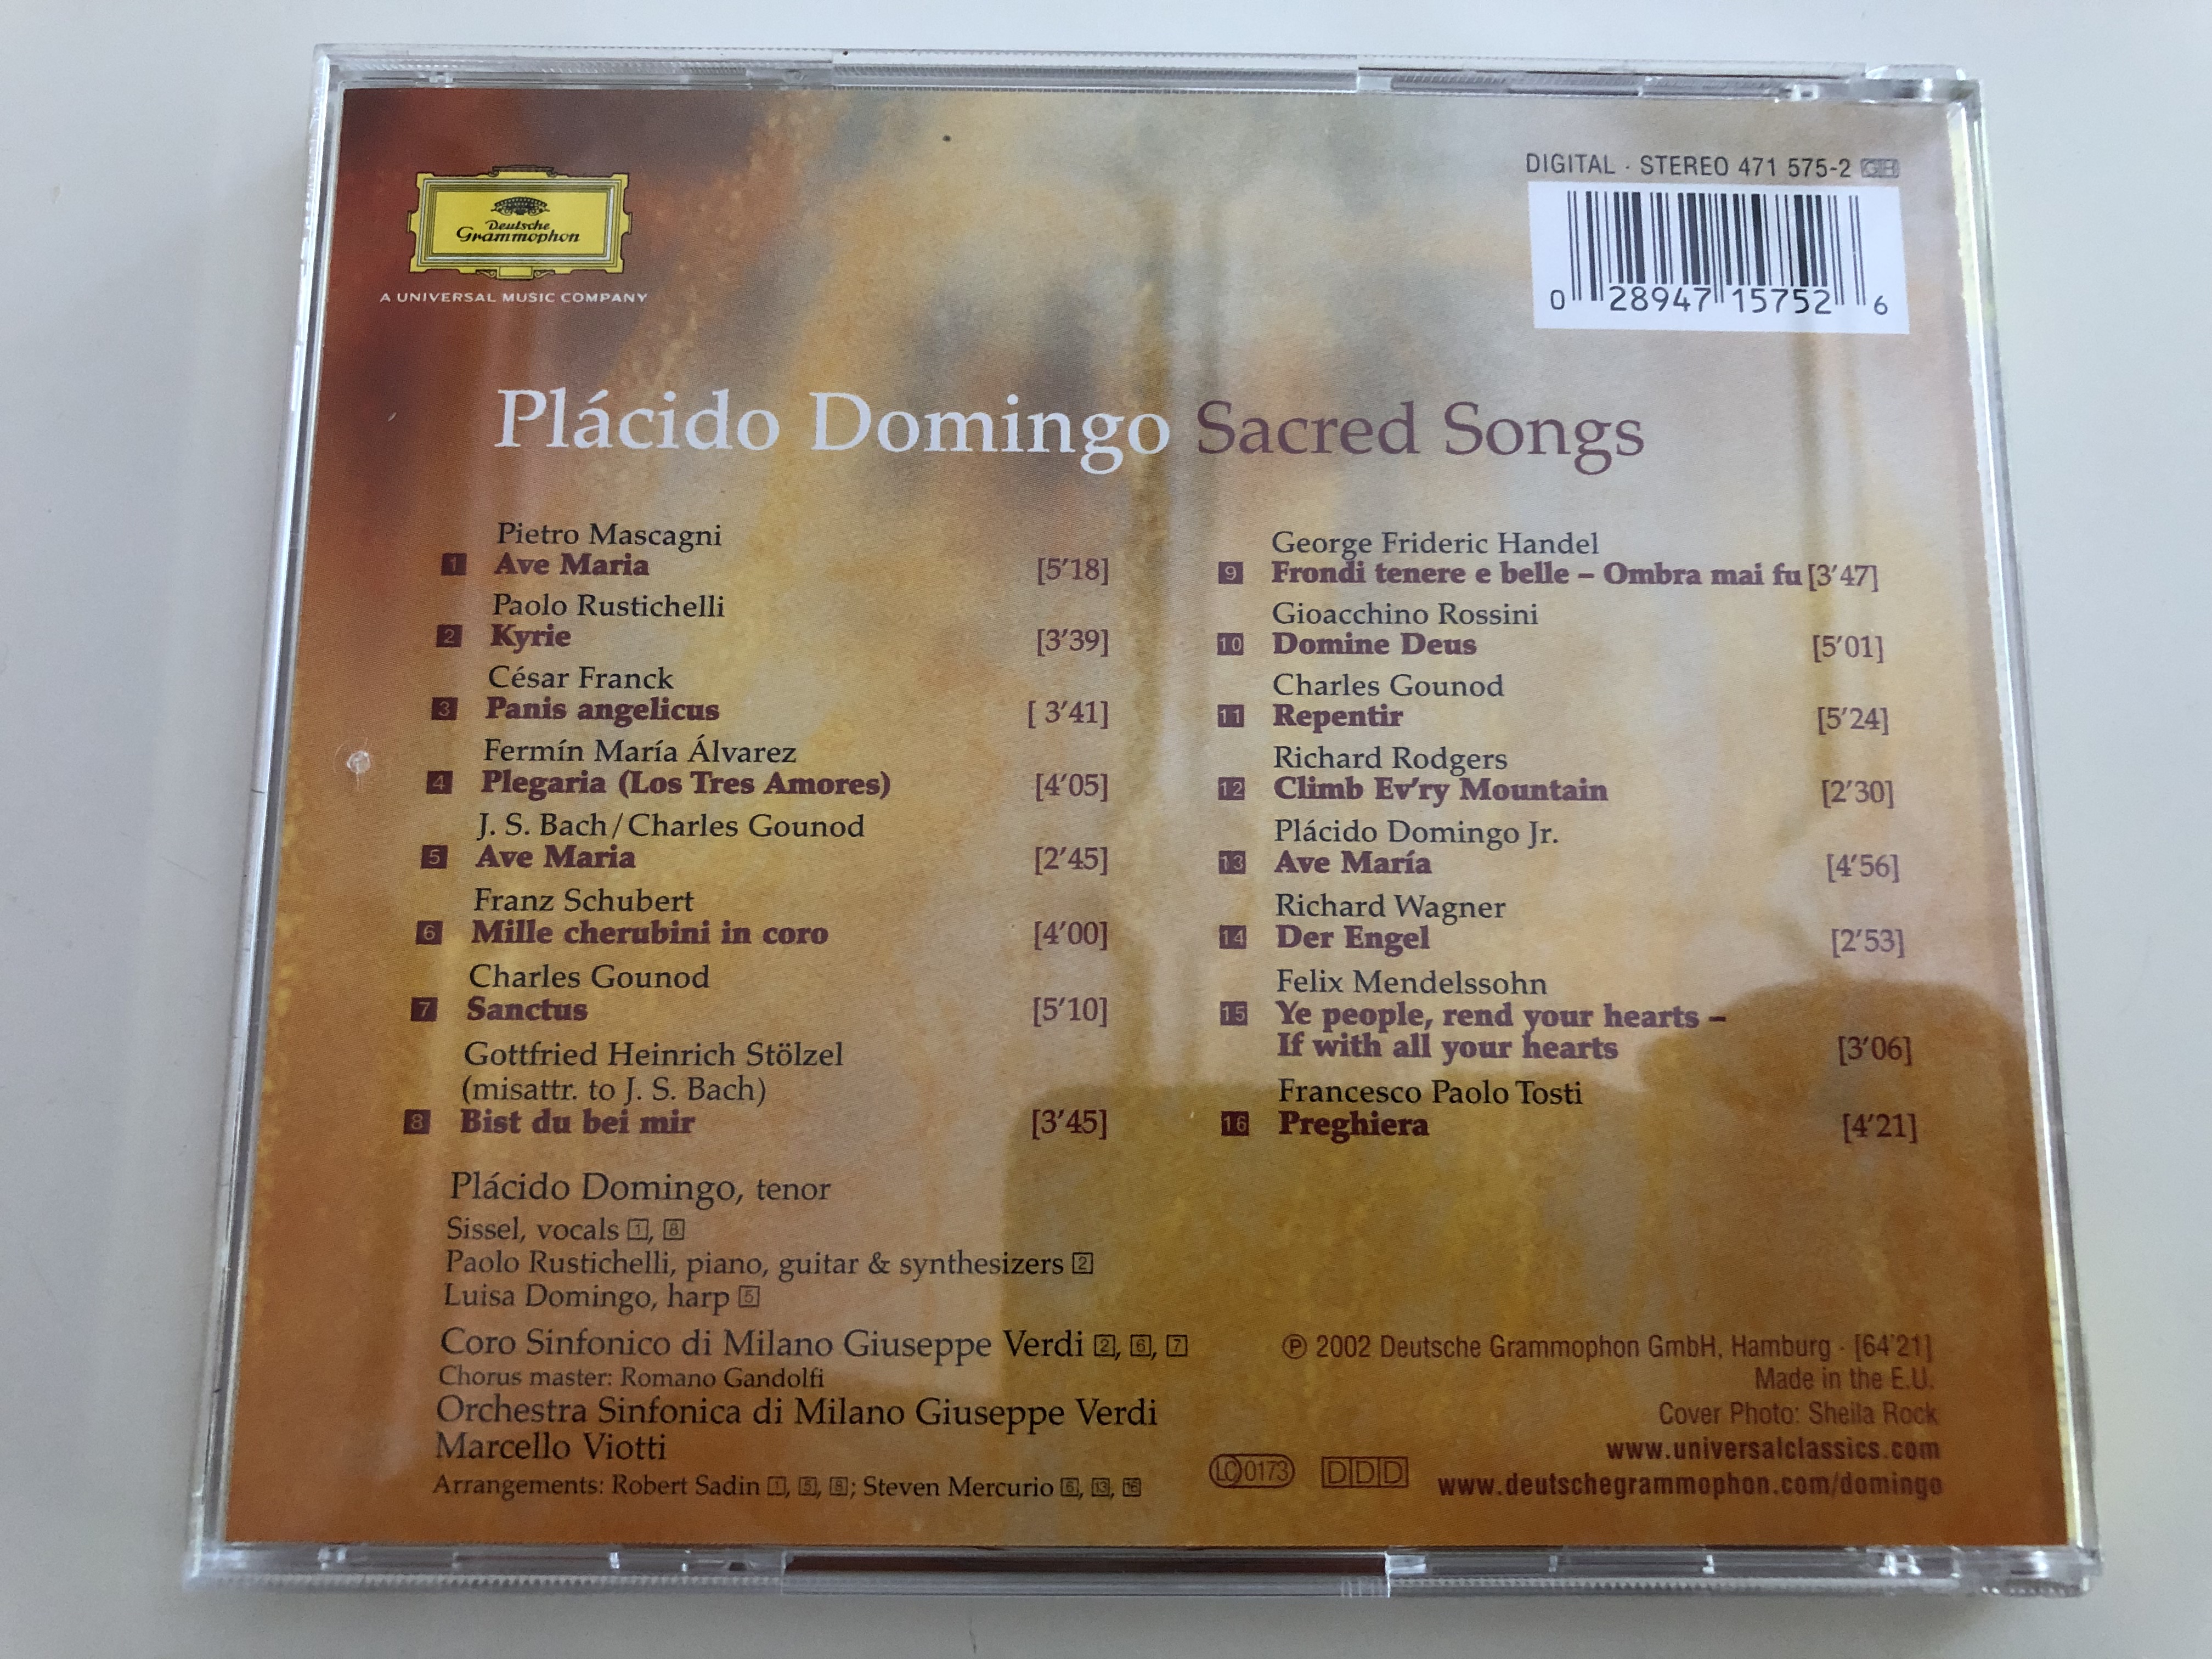 pl-cido-domingo-sacred-songs-coro-sinfonico-di-milano-chorus-master-romano-gandolfi-orchestra-sinfonica-di-milano-giuseppe-verdi-marcello-viotti-audio-cd-2002-8-.jpg